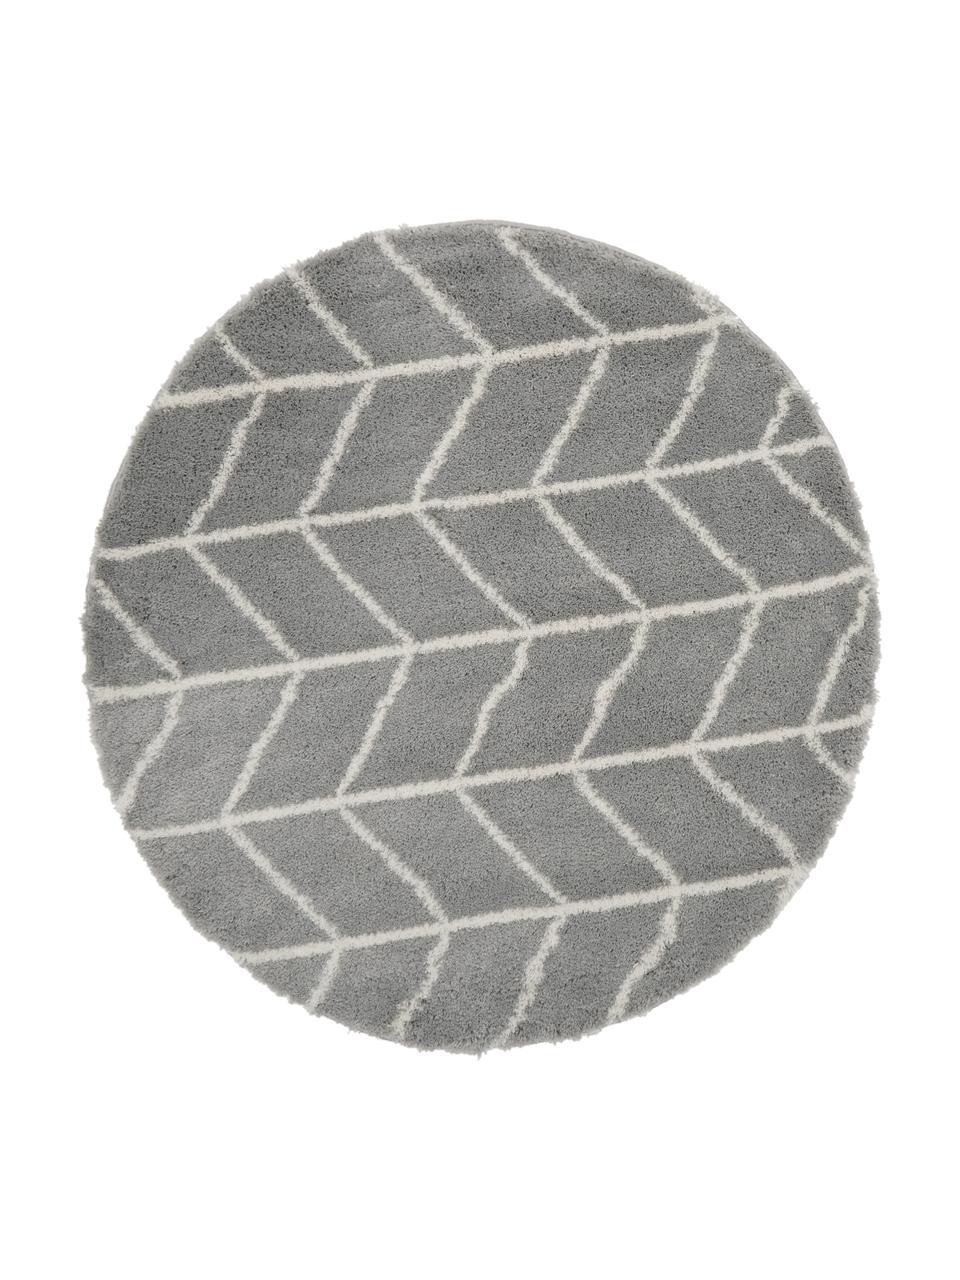 Runder Hochflor-Teppich Cera in Grau/Creme, Flor: 100% Polypropylen, Grau, Cremeweiß, Ø 150 cm (Größe M)